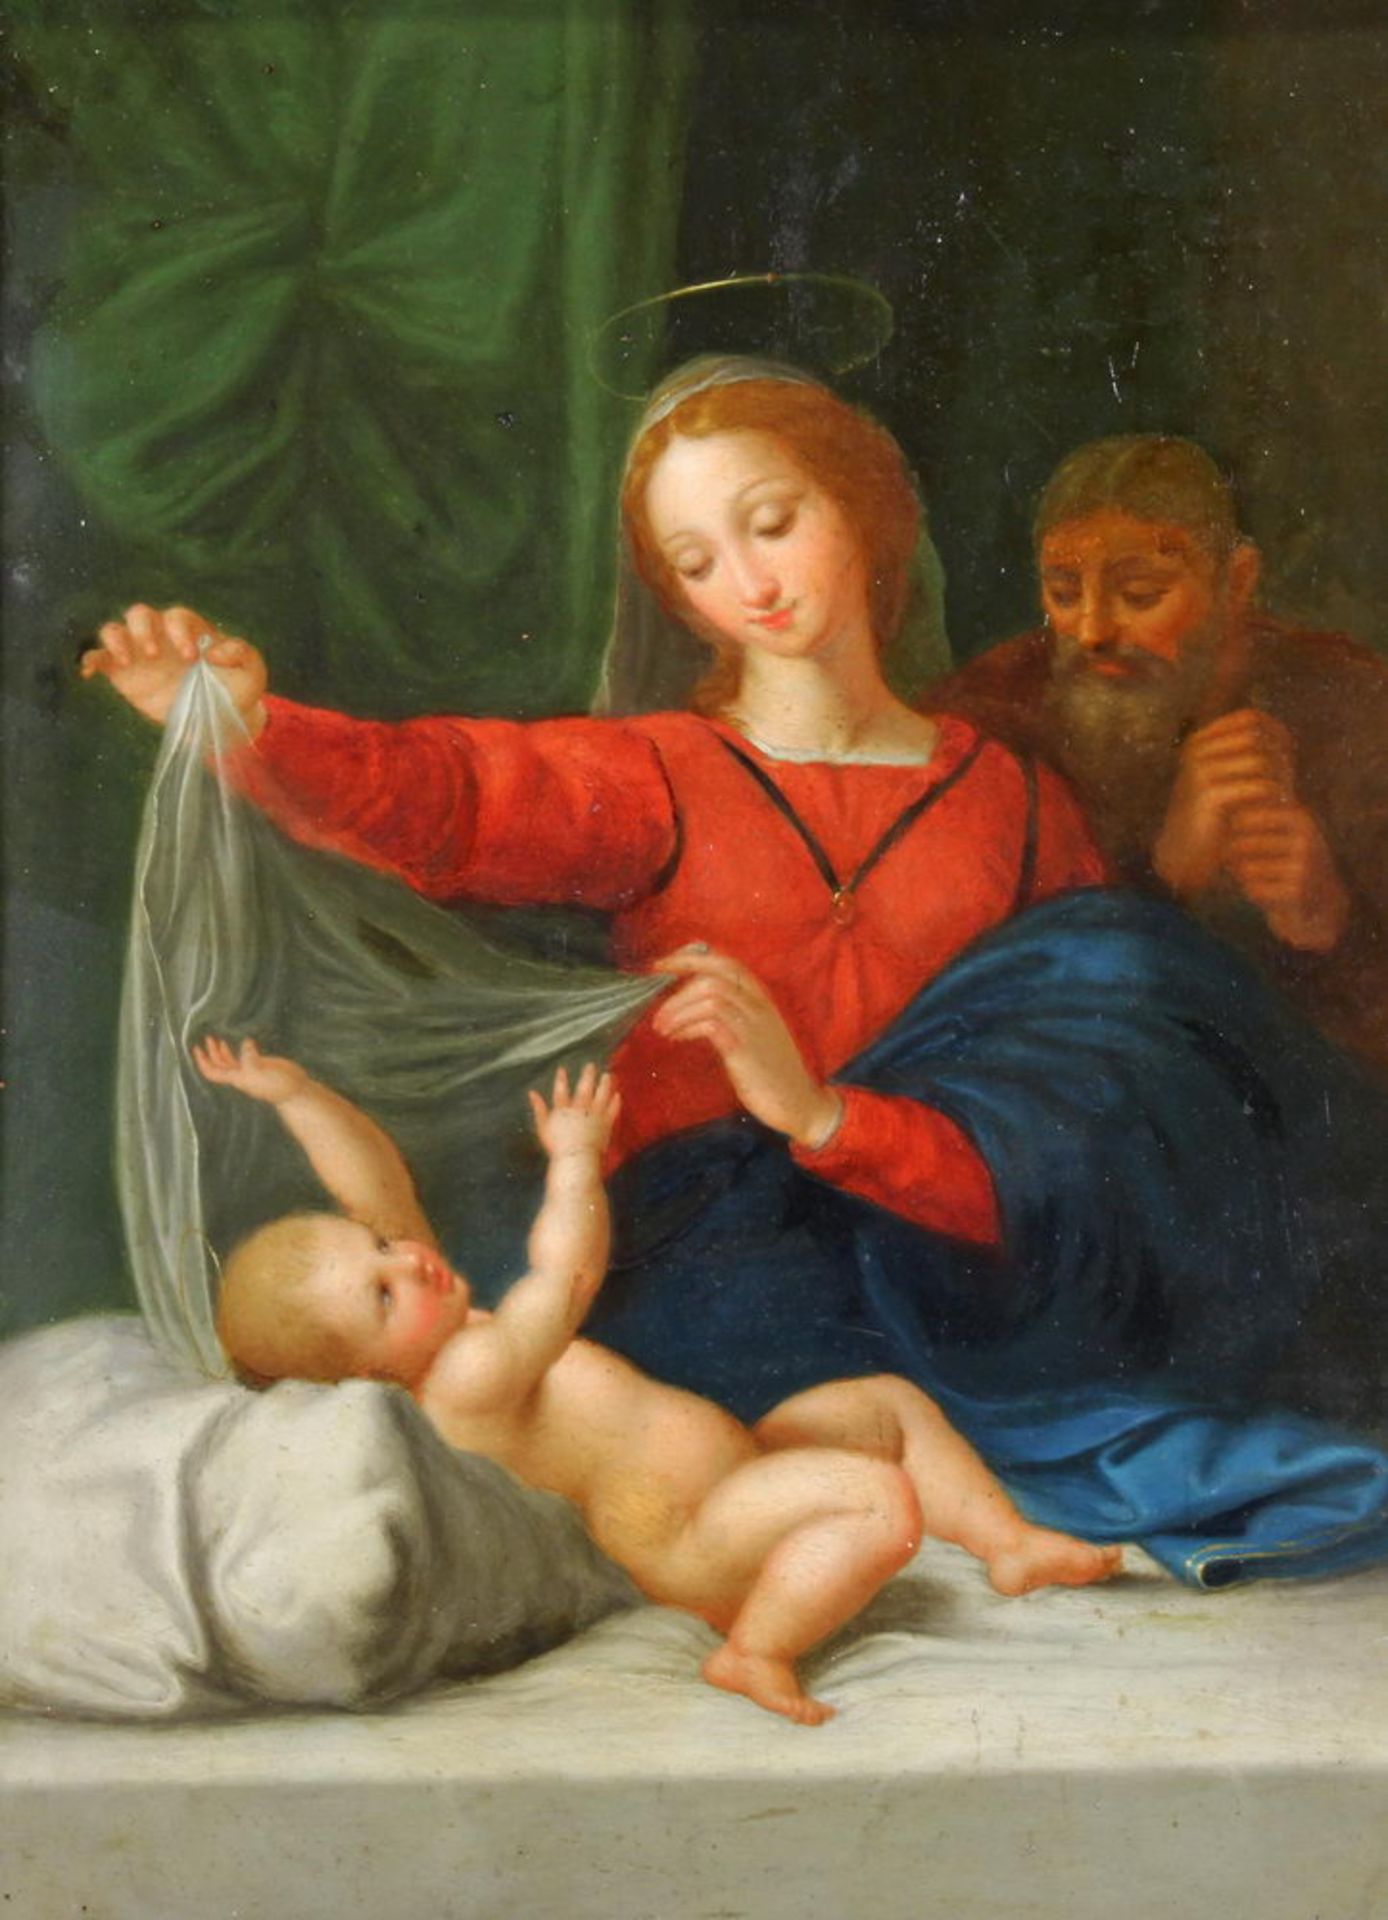 Raffael Sanzio da Urbino (1483 - 1520), nach, "Madonna von Loreto", Öl auf Kupfer, wohl 16./17. Jh